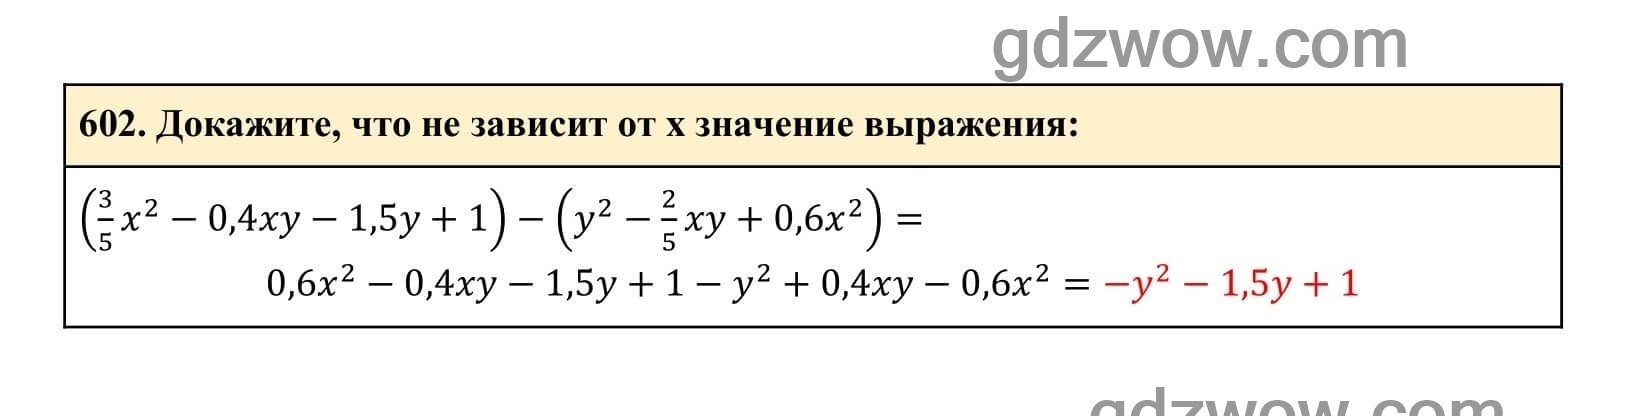 Упражнение 602 - ГДЗ по Алгебре 7 класс Учебник Макарычев (решебник) - GDZwow